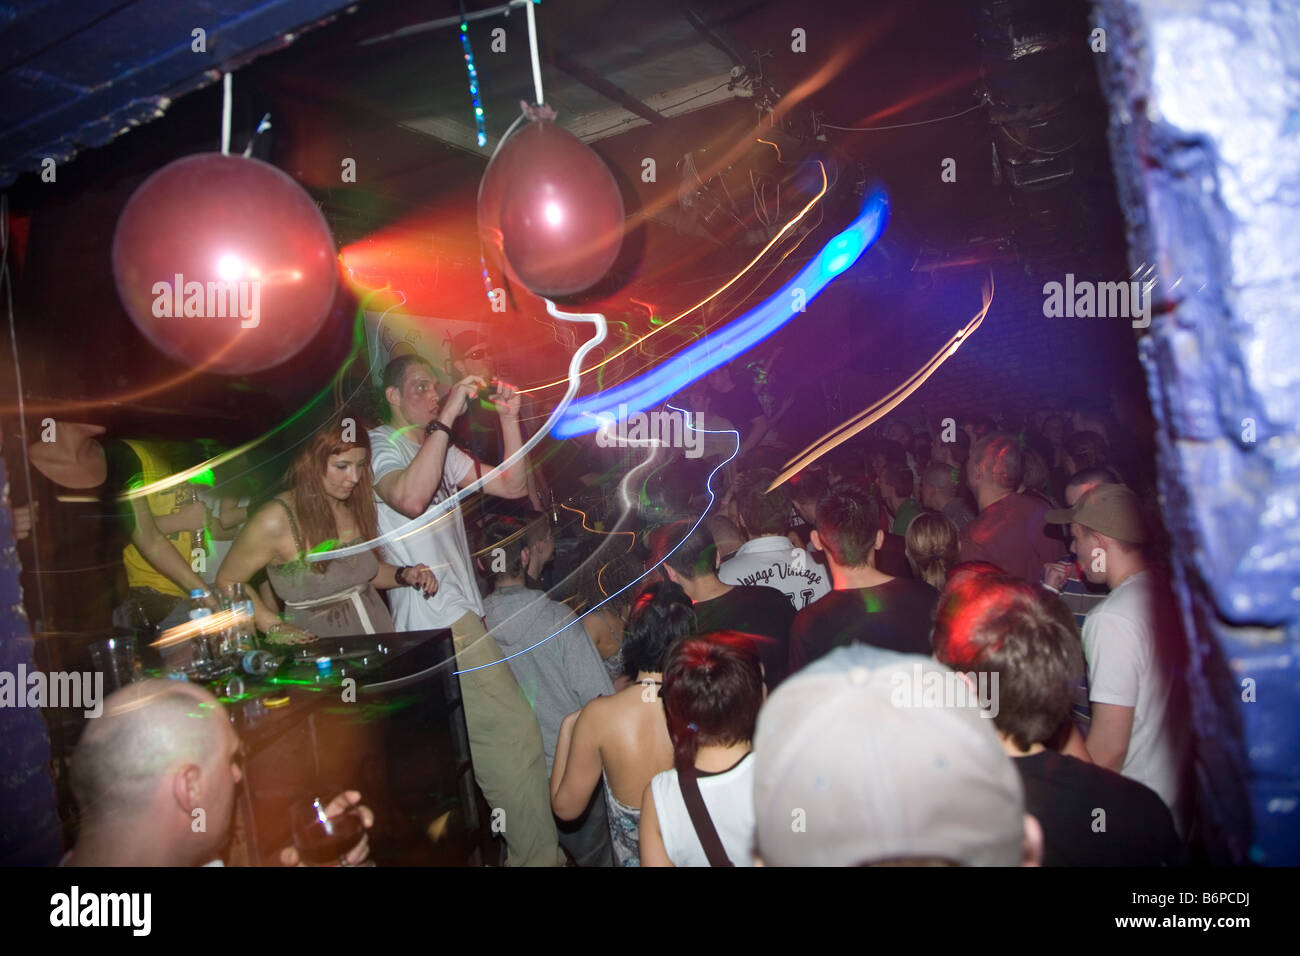 La Polonia Sopot Polska Europa Centrale UE club luci musica clubbing persone notte di divertimento Tricity Pomerania bar pub bere motion Foto Stock